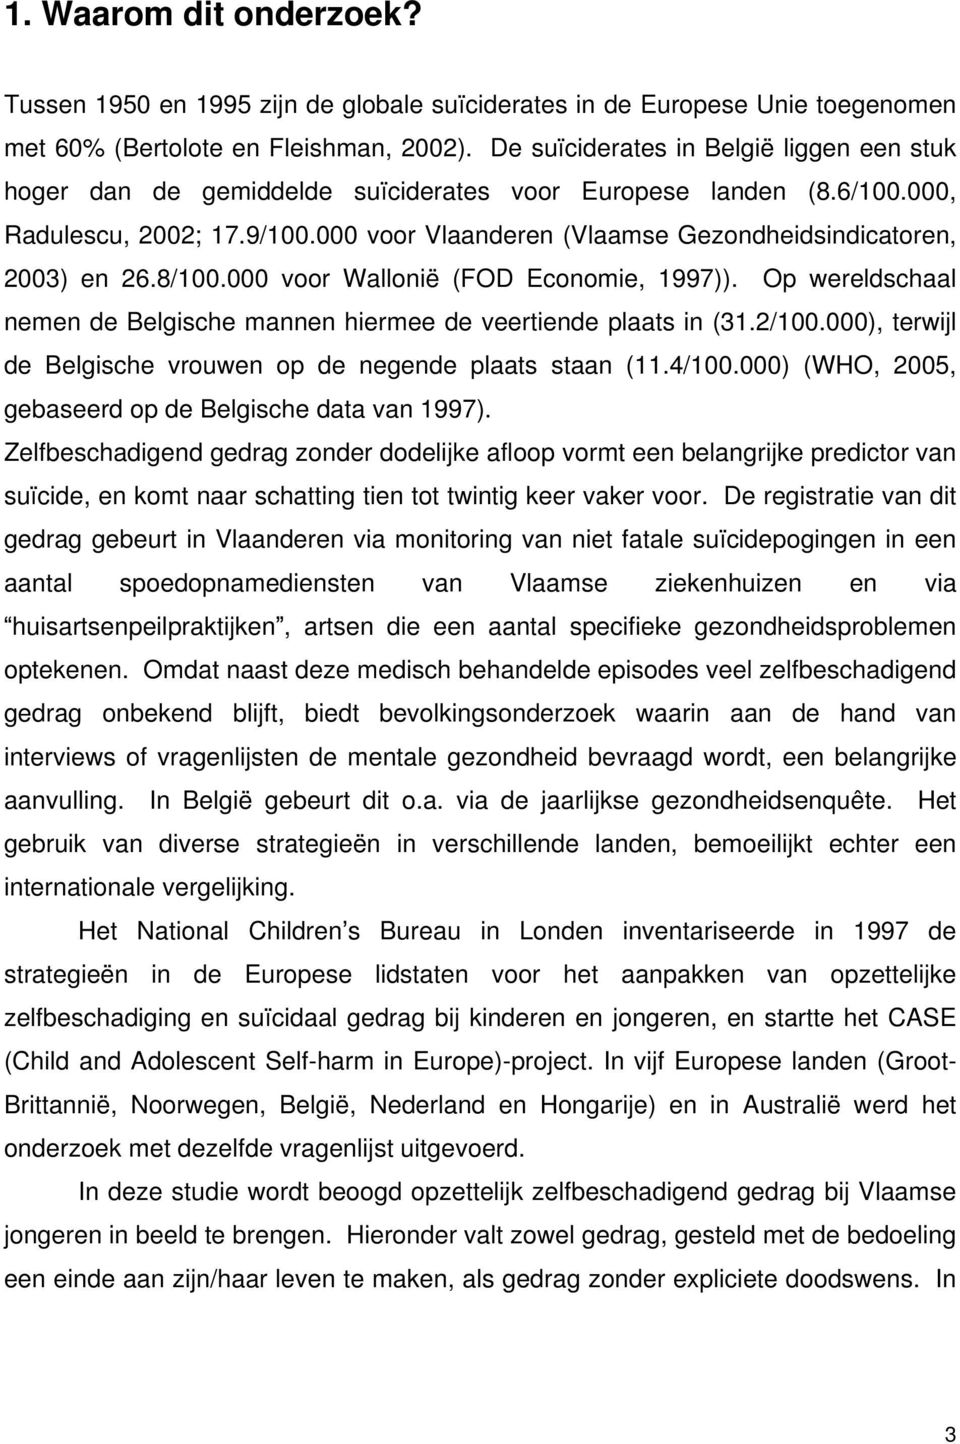 000 voor Vlaanderen (Vlaamse Gezondheidsindicatoren, 2003) en 26.8/100.000 voor Wallonië (FOD Economie, 1997)). Op wereldschaal nemen de Belgische mannen hiermee de veertiende plaats in (31.2/100.